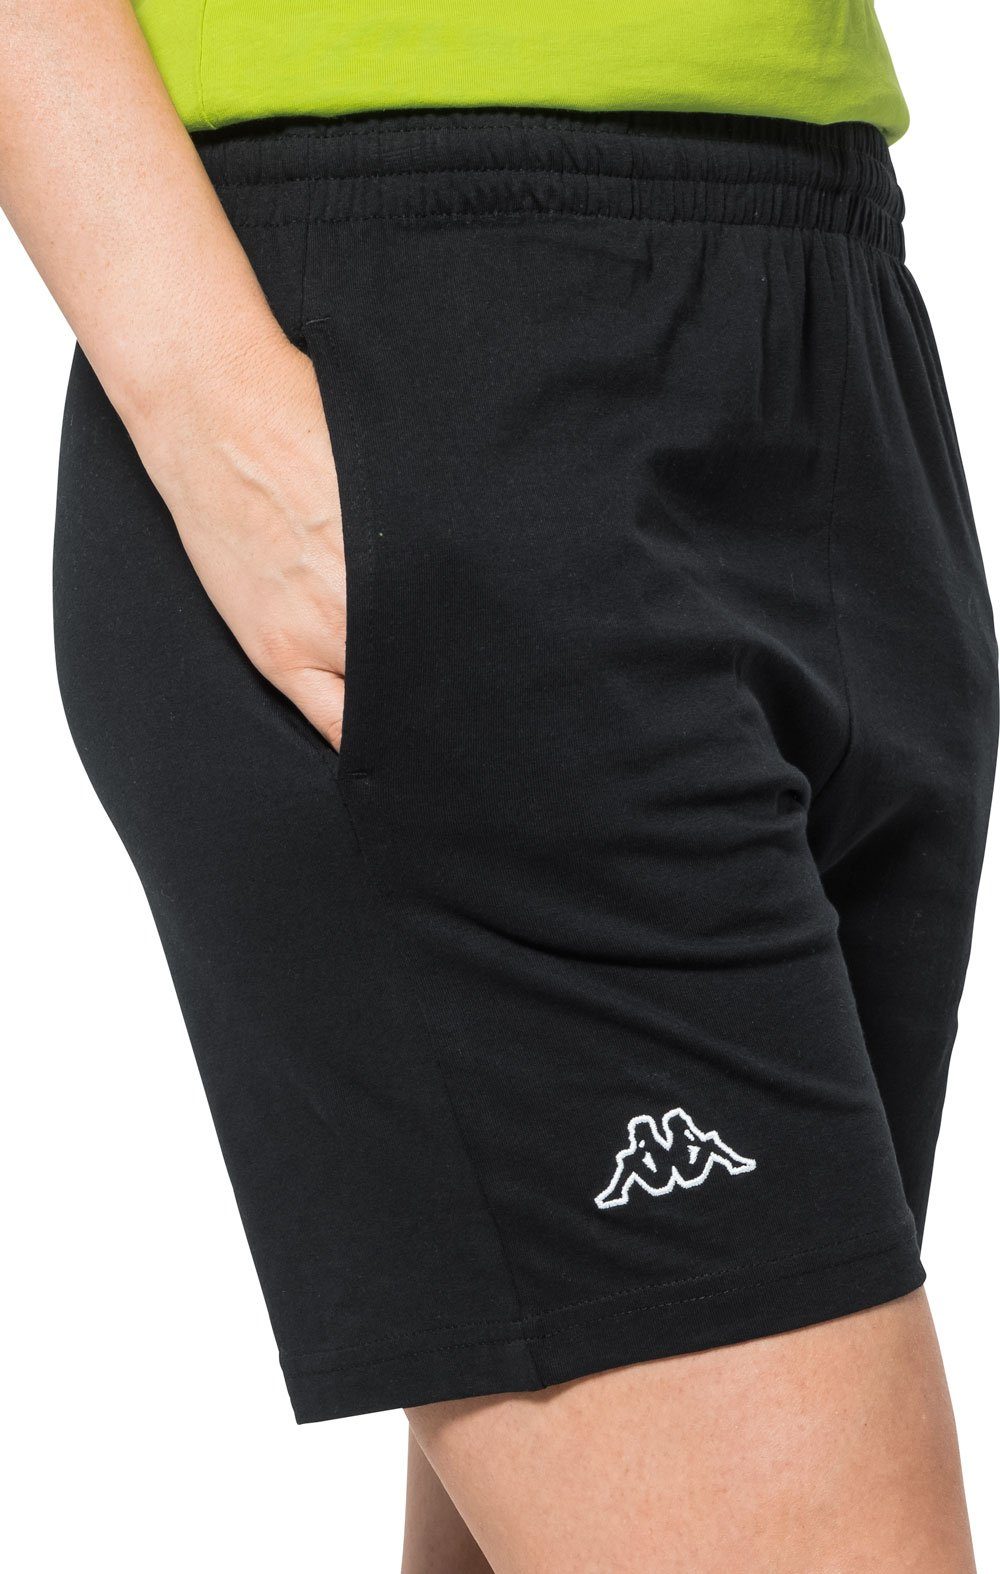 Kappa Shorts unisex, Baumwolle formstabiler schwarz aus